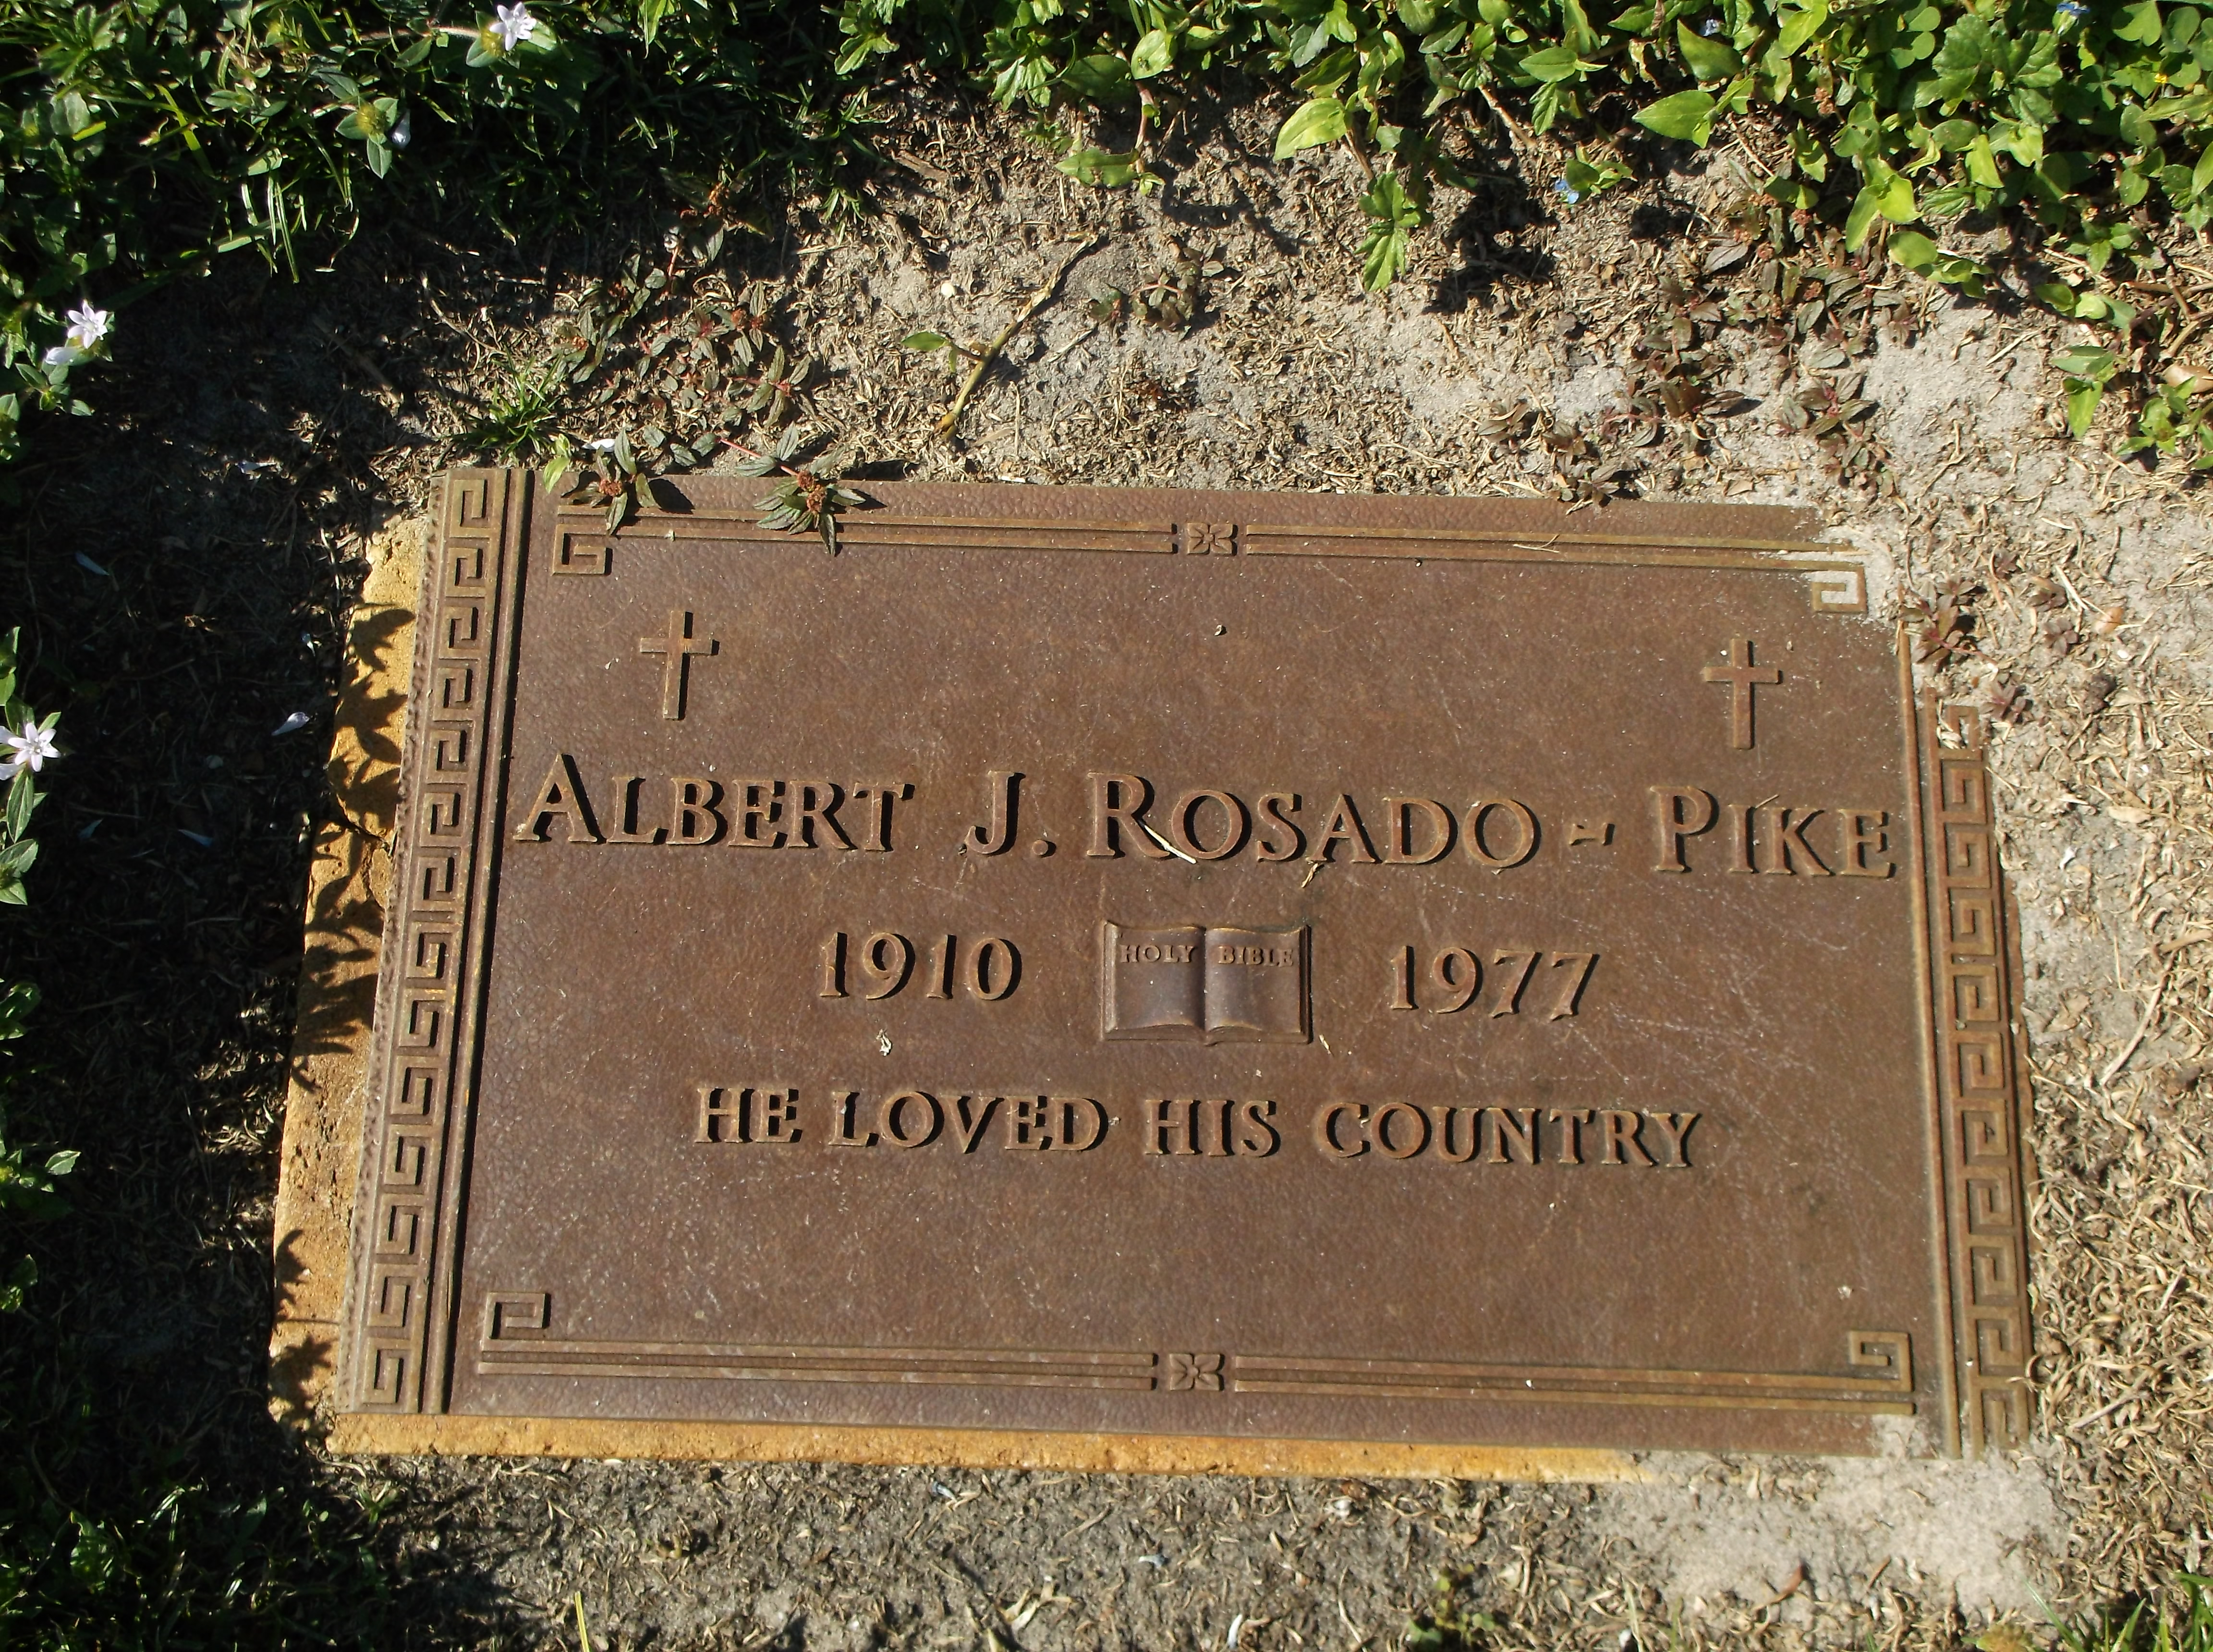 Albert J Rosado-Pike